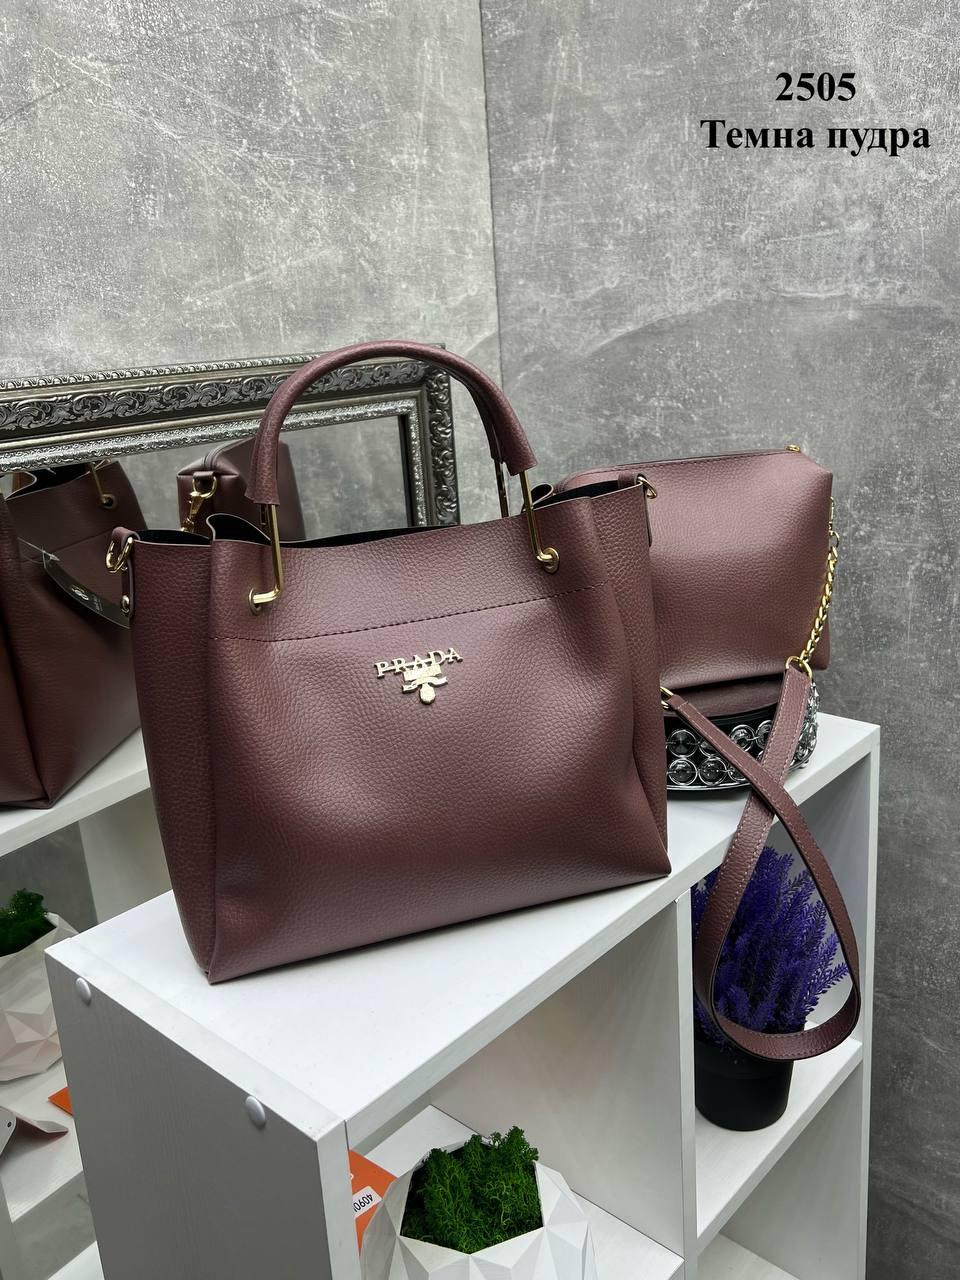 Темна пудра з логотипом - елегантний, стильний, зручний комплект сумка + клатч (2505)